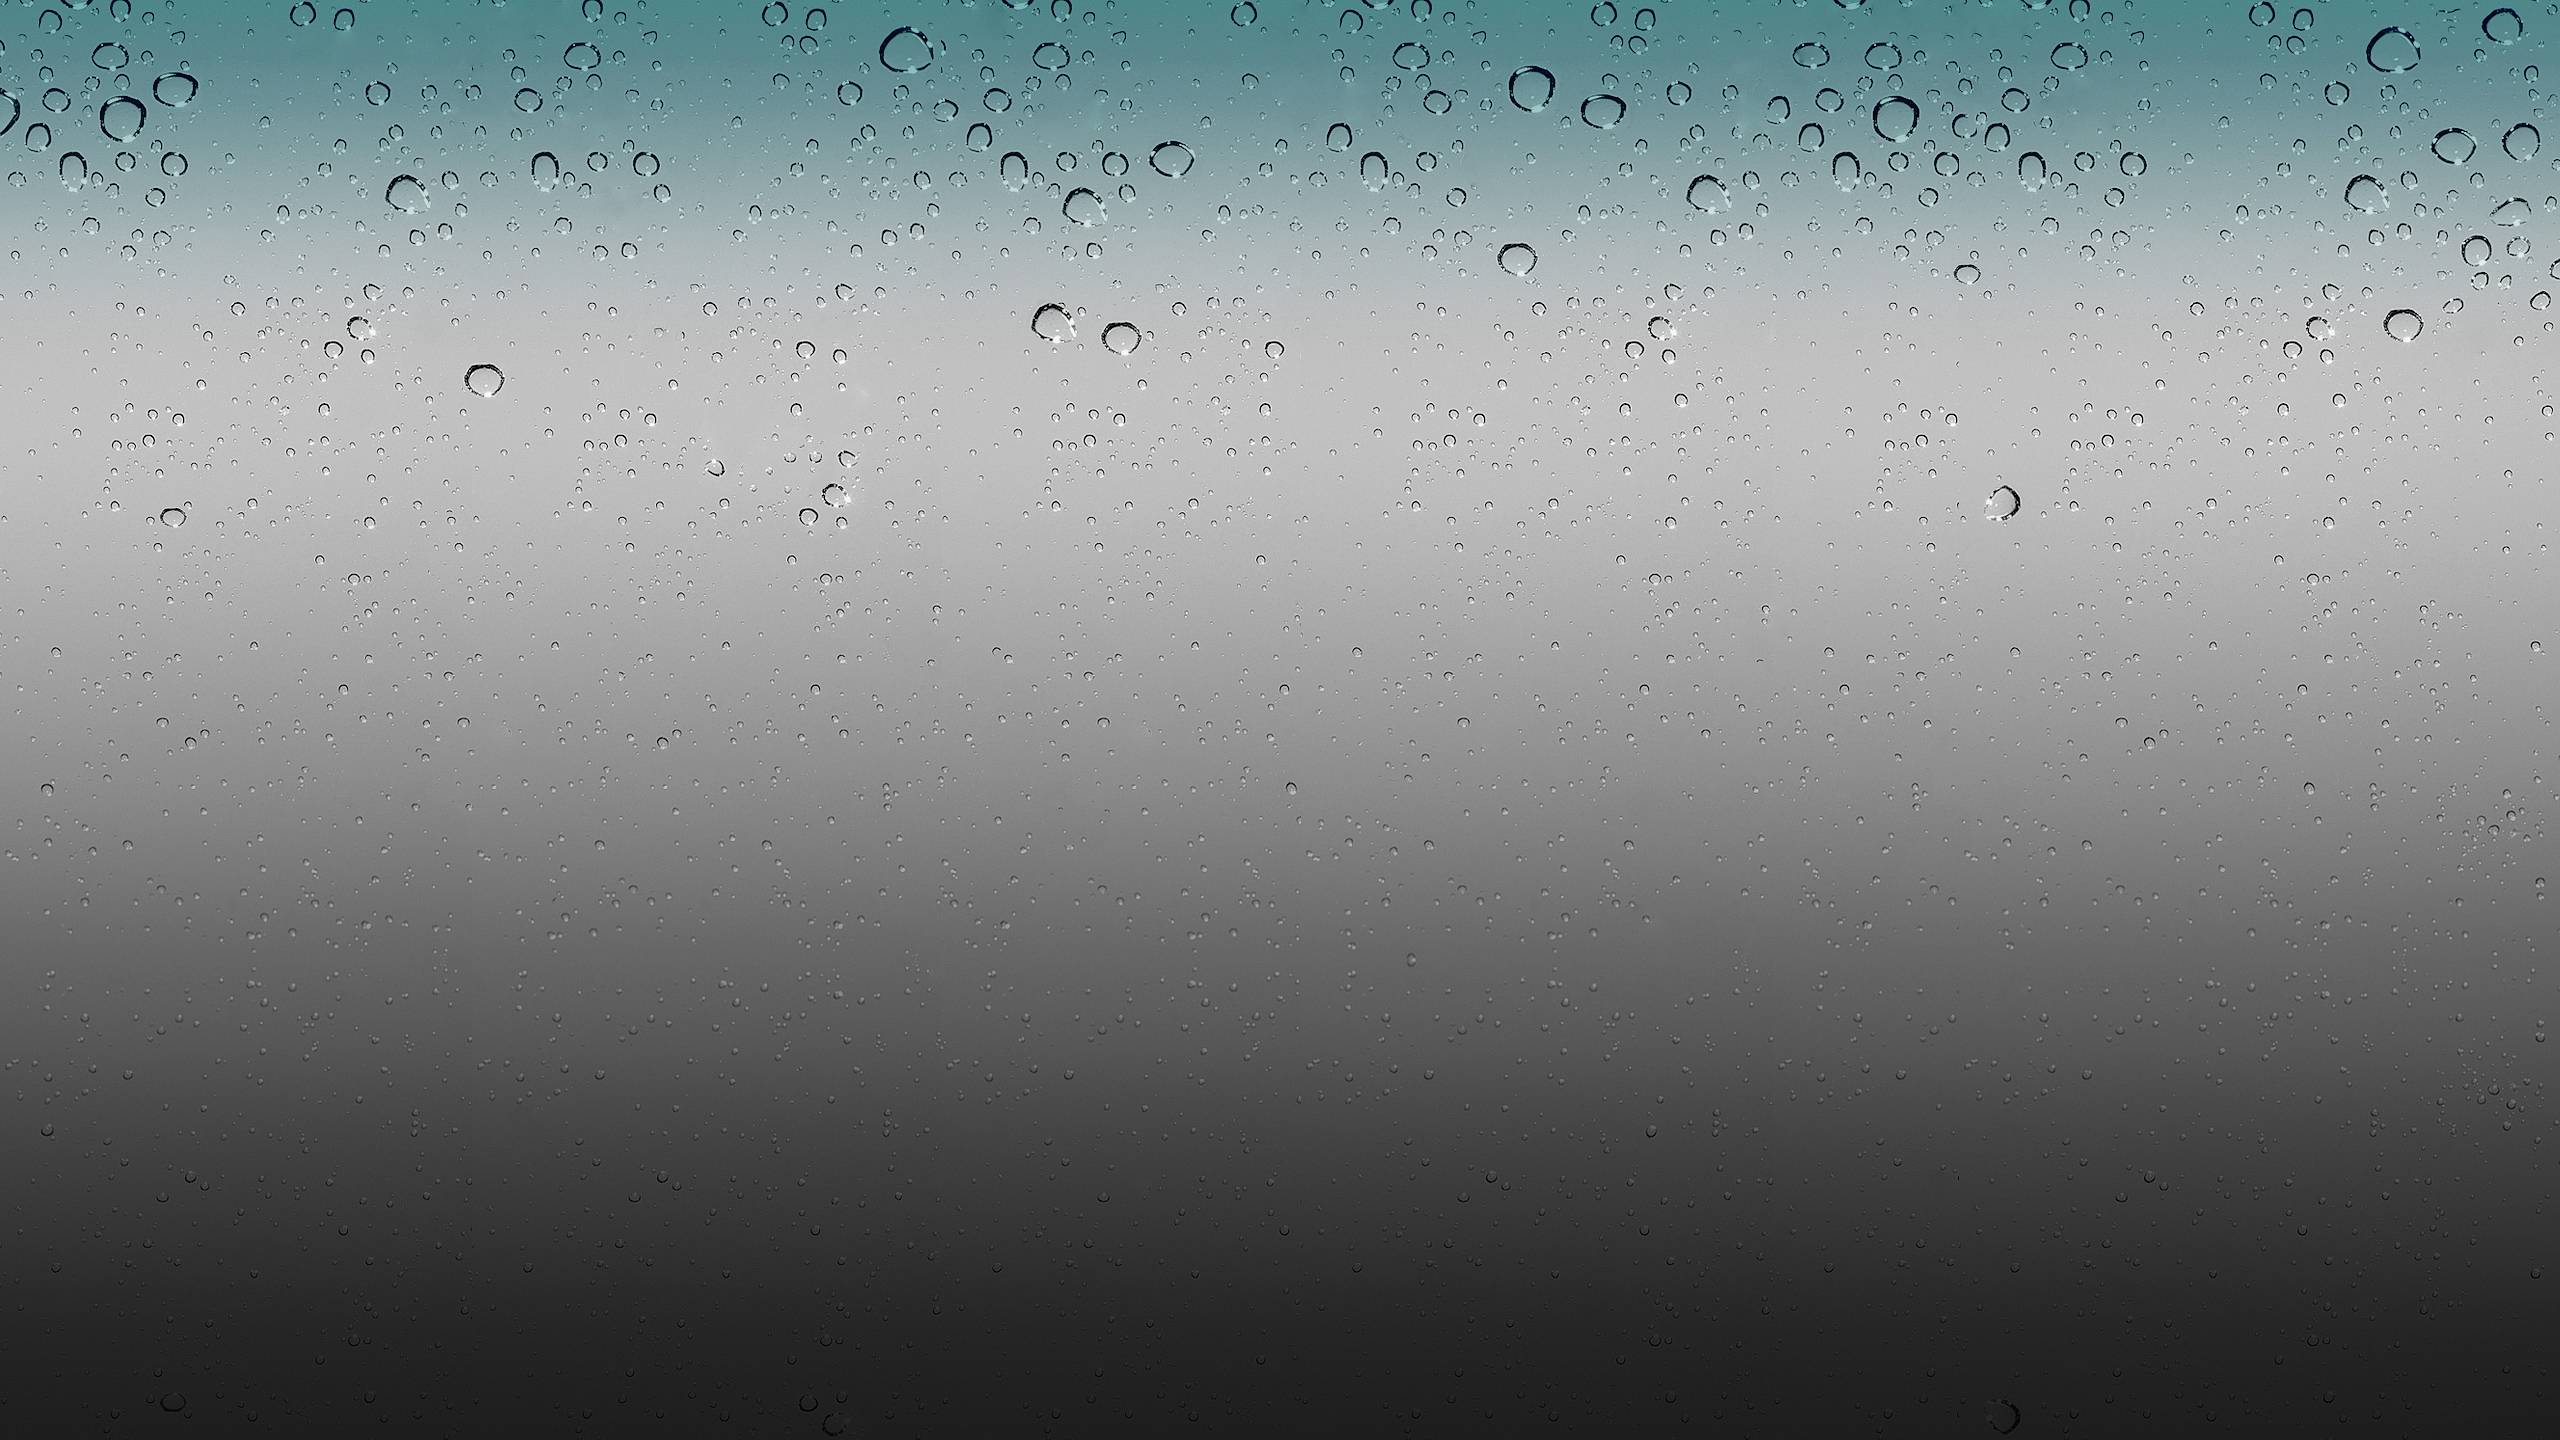 IOS Rain Drops Wallpaper HD By Airplane